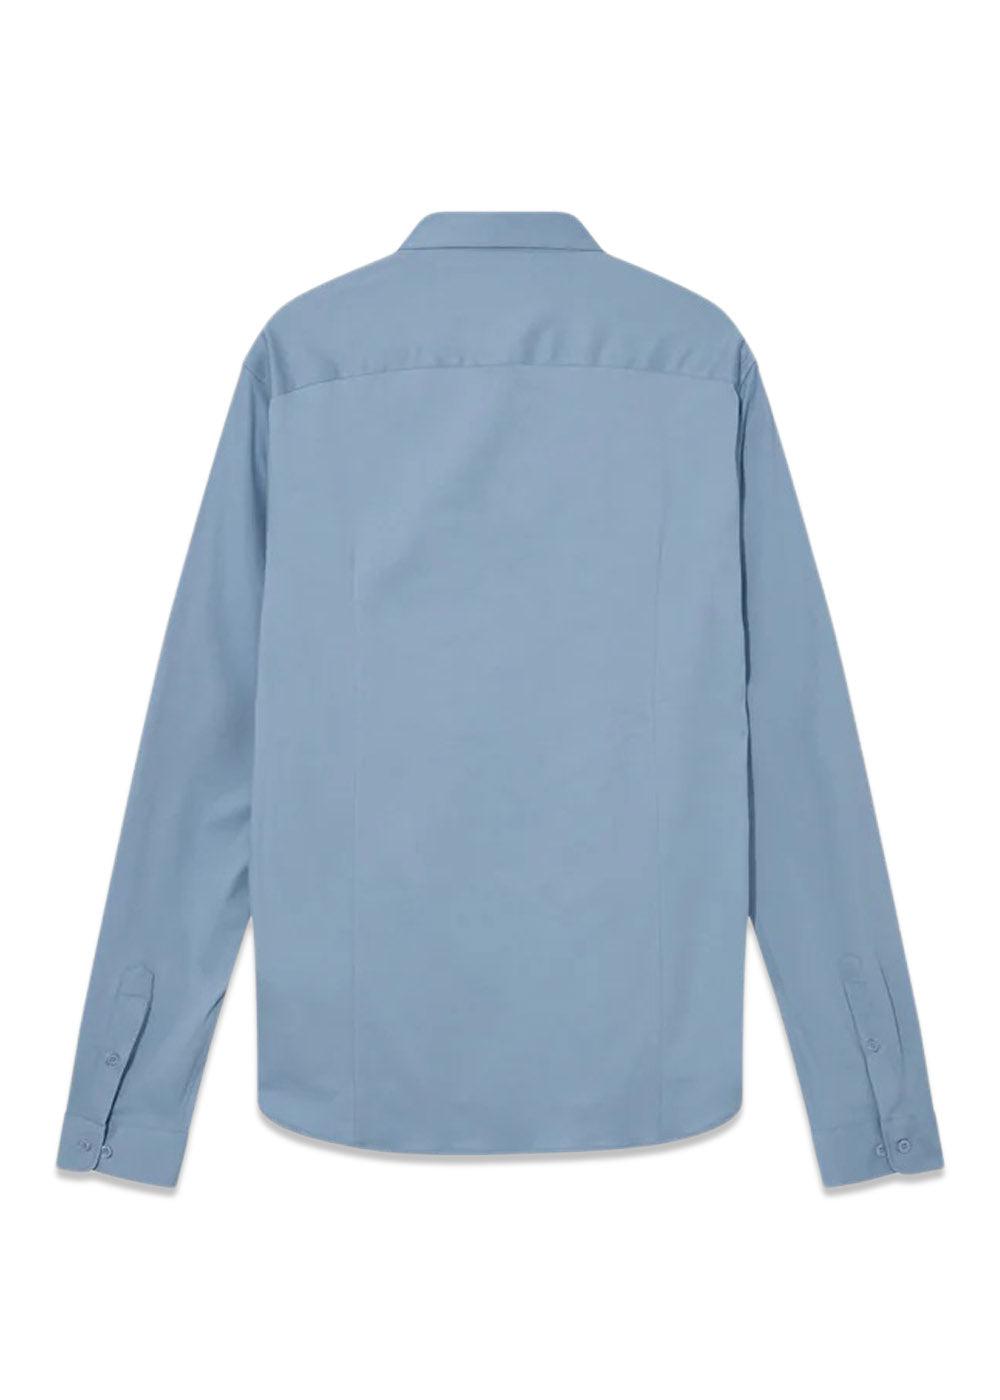 MMGMarco Crunch Jersey Shirt - Bel Air Blue